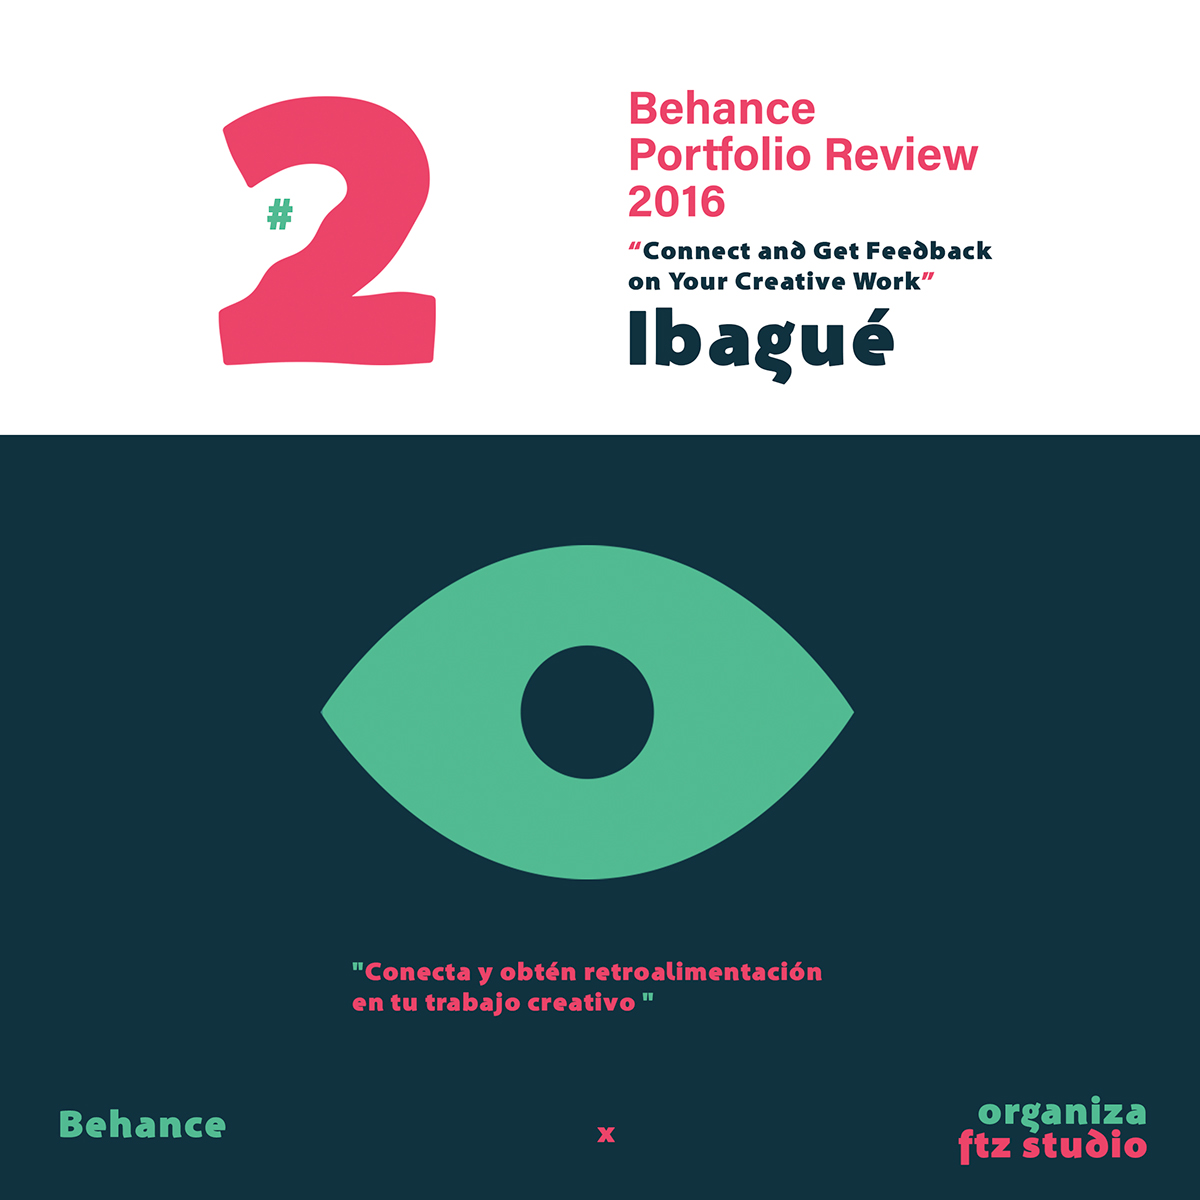 Behance BehanceIbague behancecolombia Creativos ftzstudio